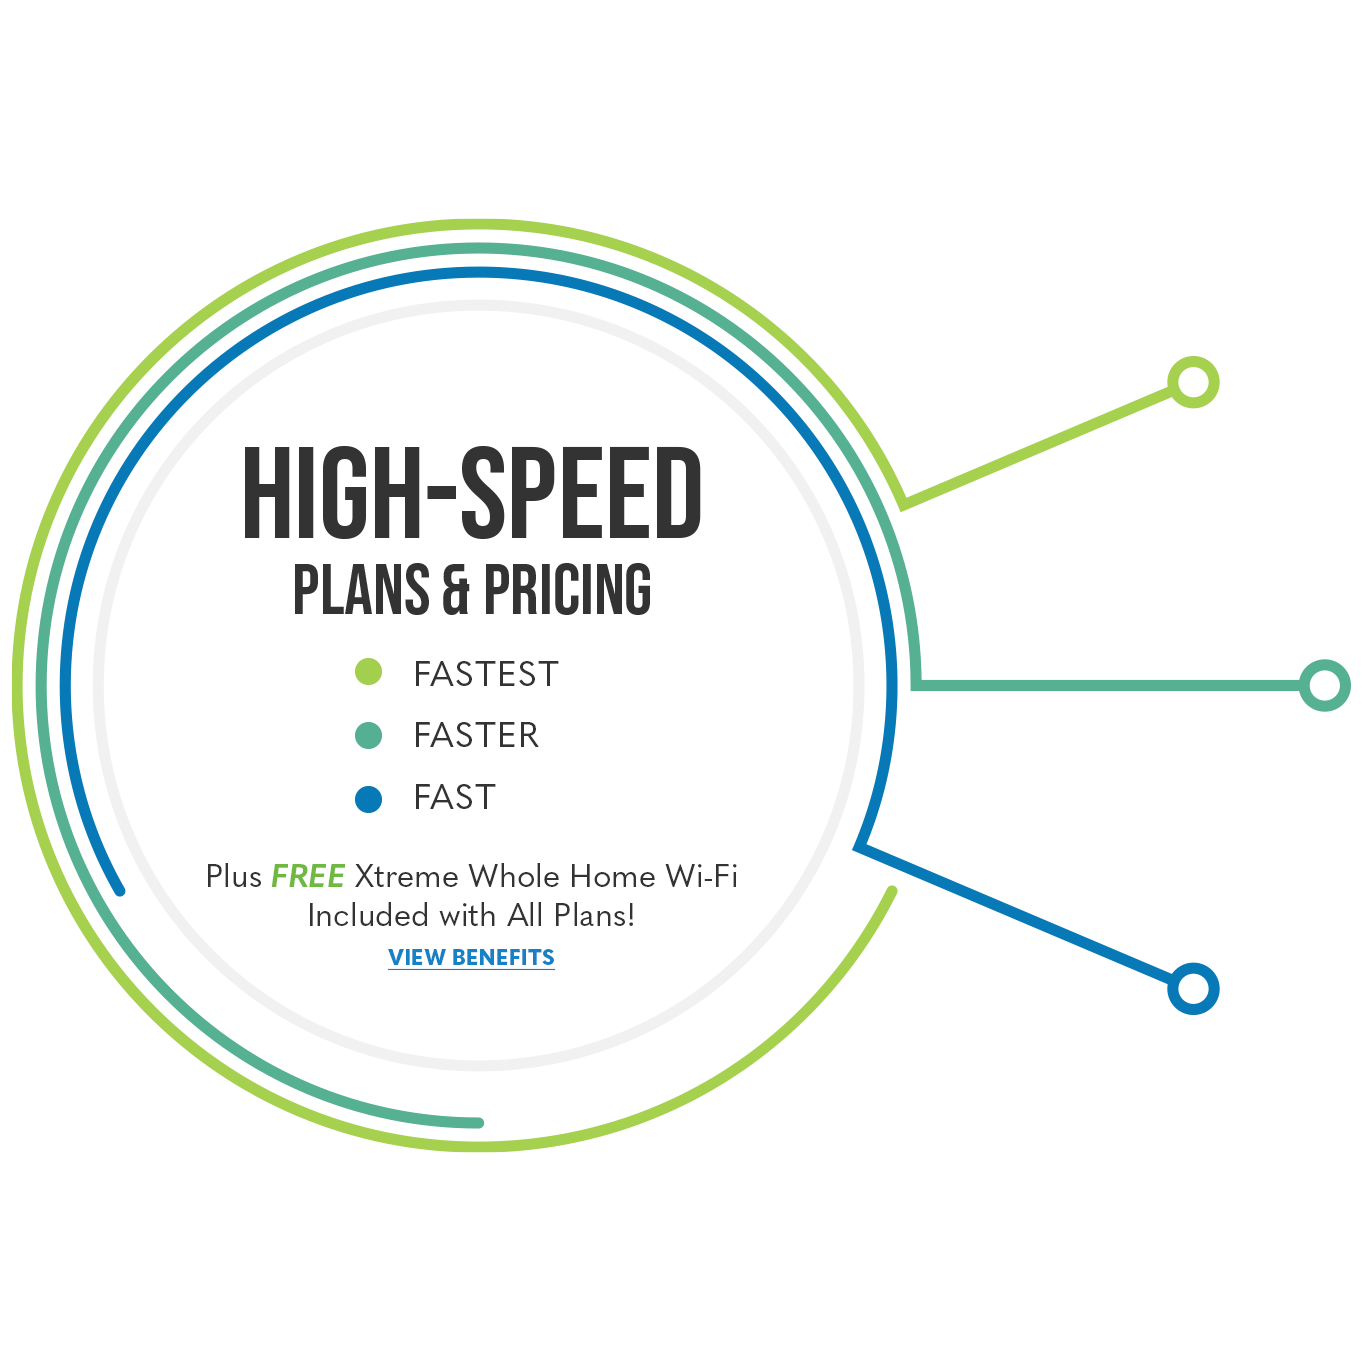 High-Speed Fiber Internet